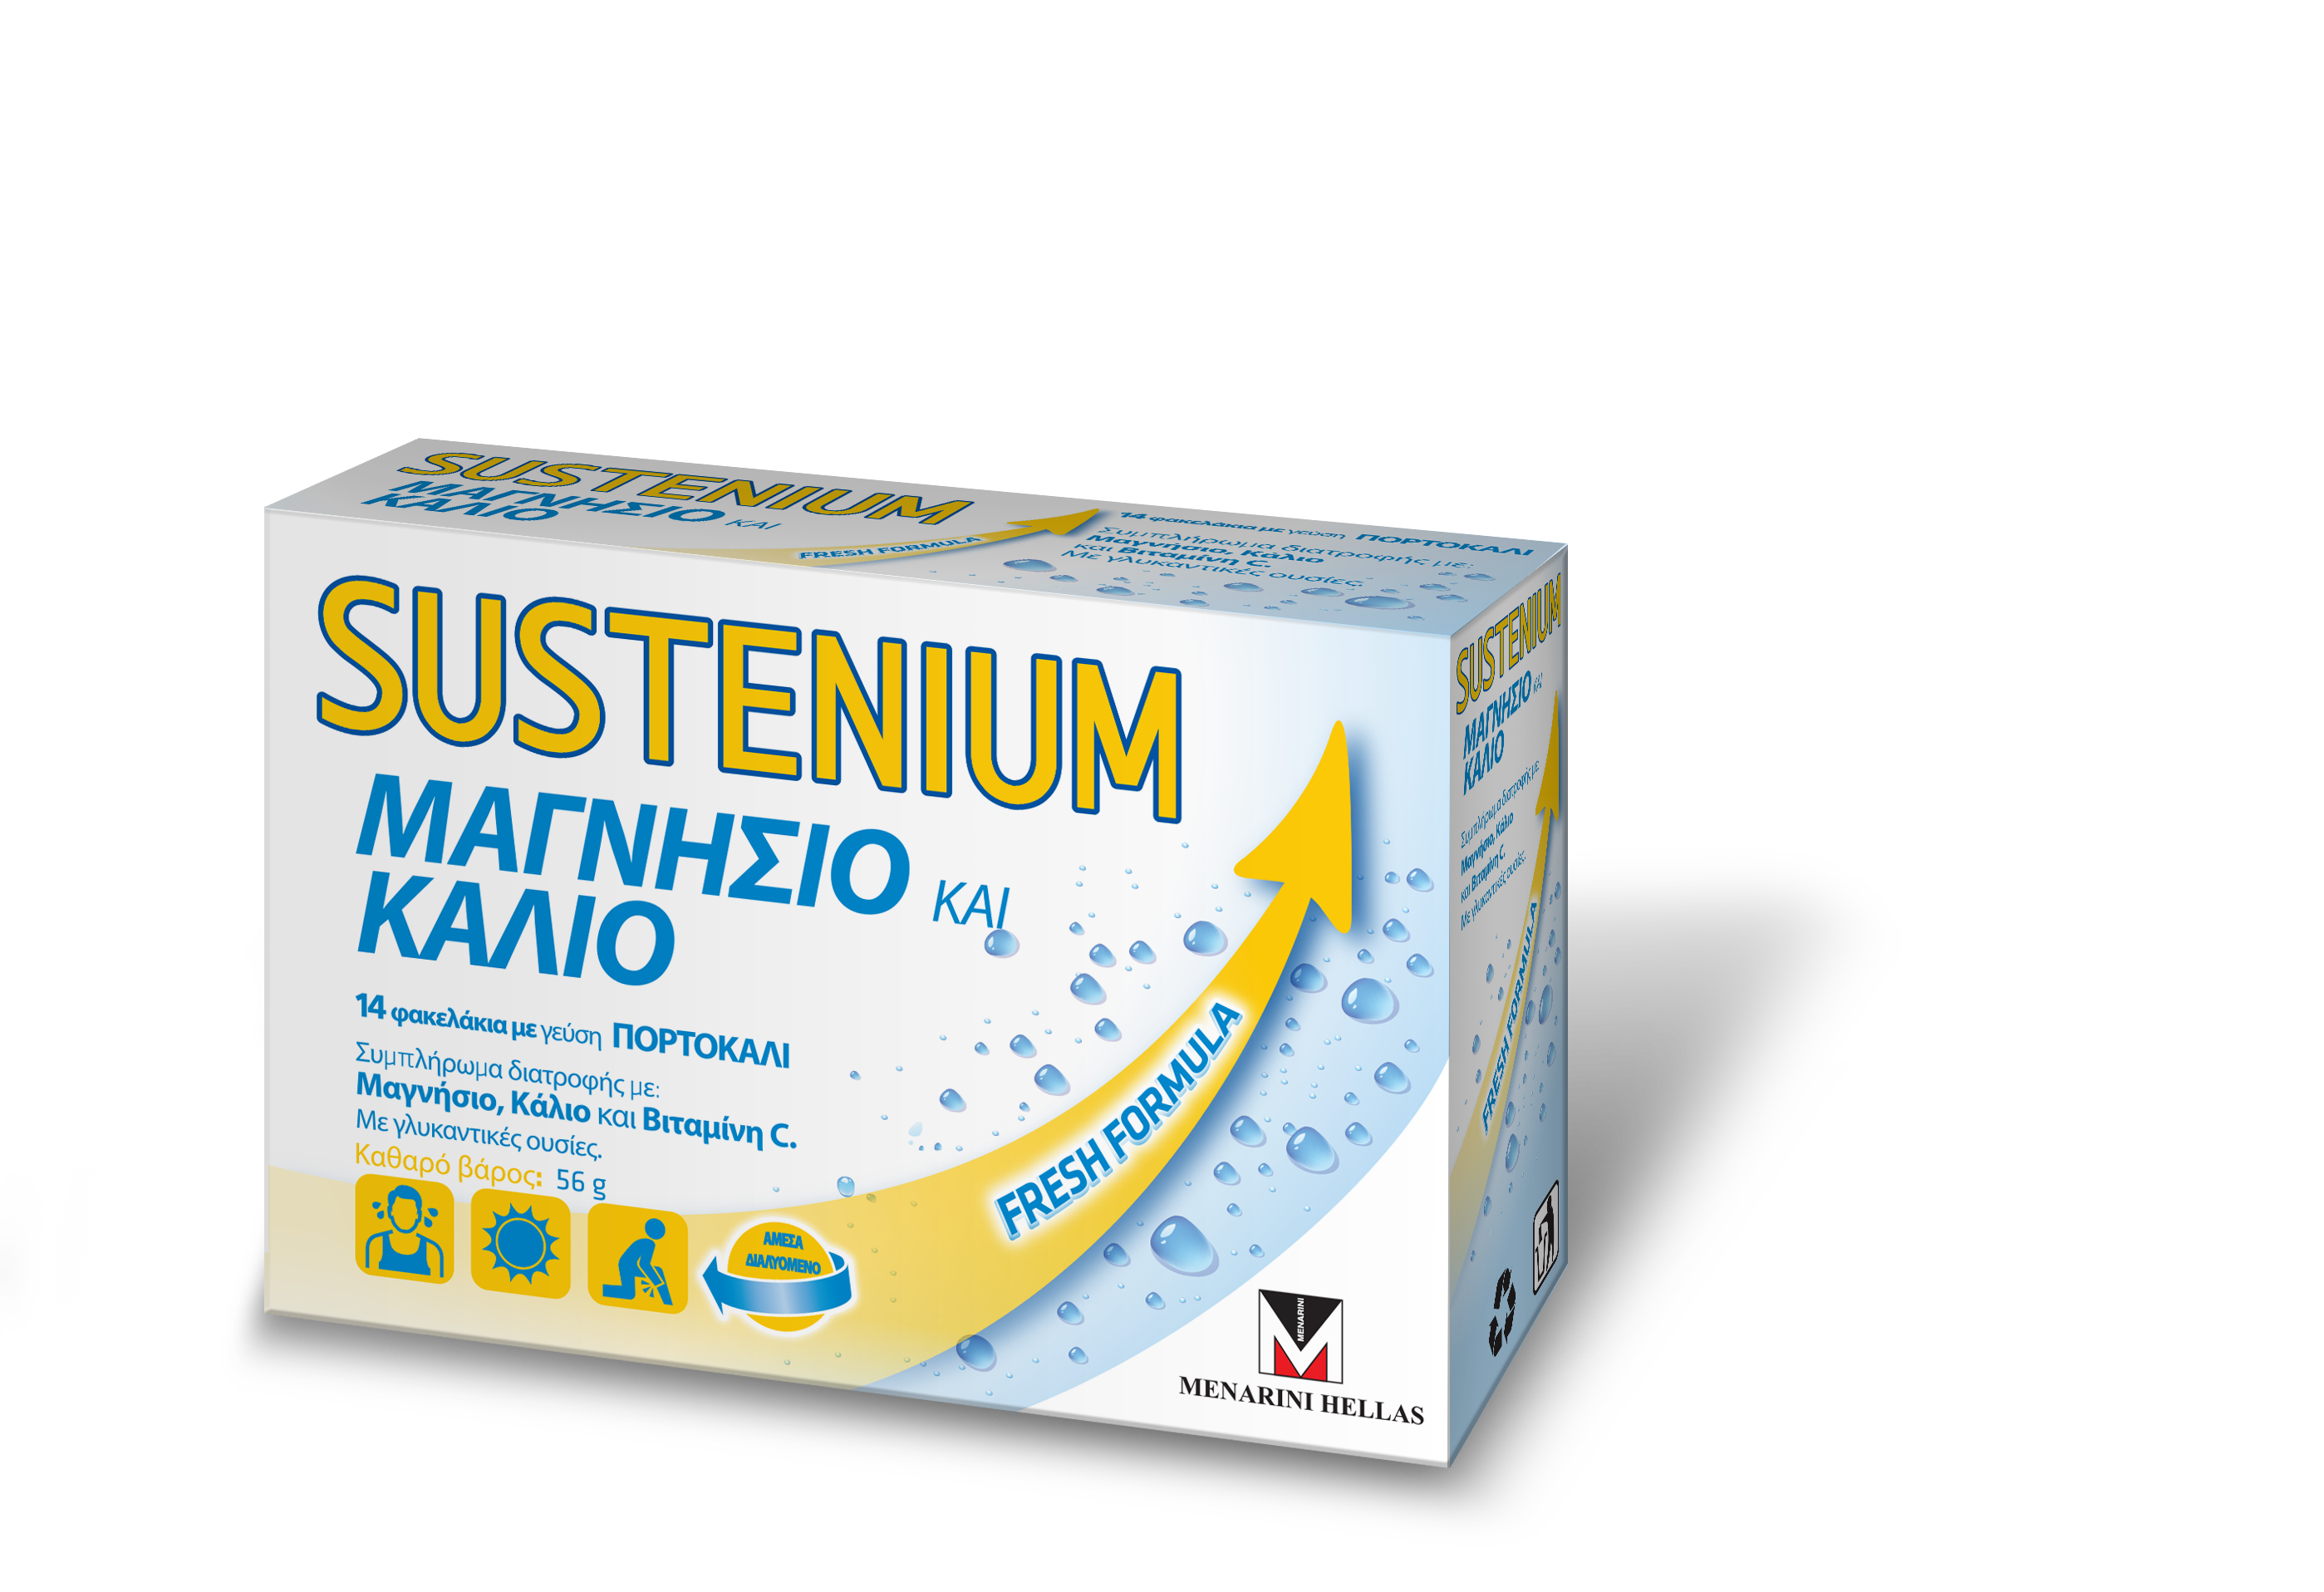 SUSTENIUM Μαγνήσιο & Κάλιο - 14 φακελάκια σε σκόνη